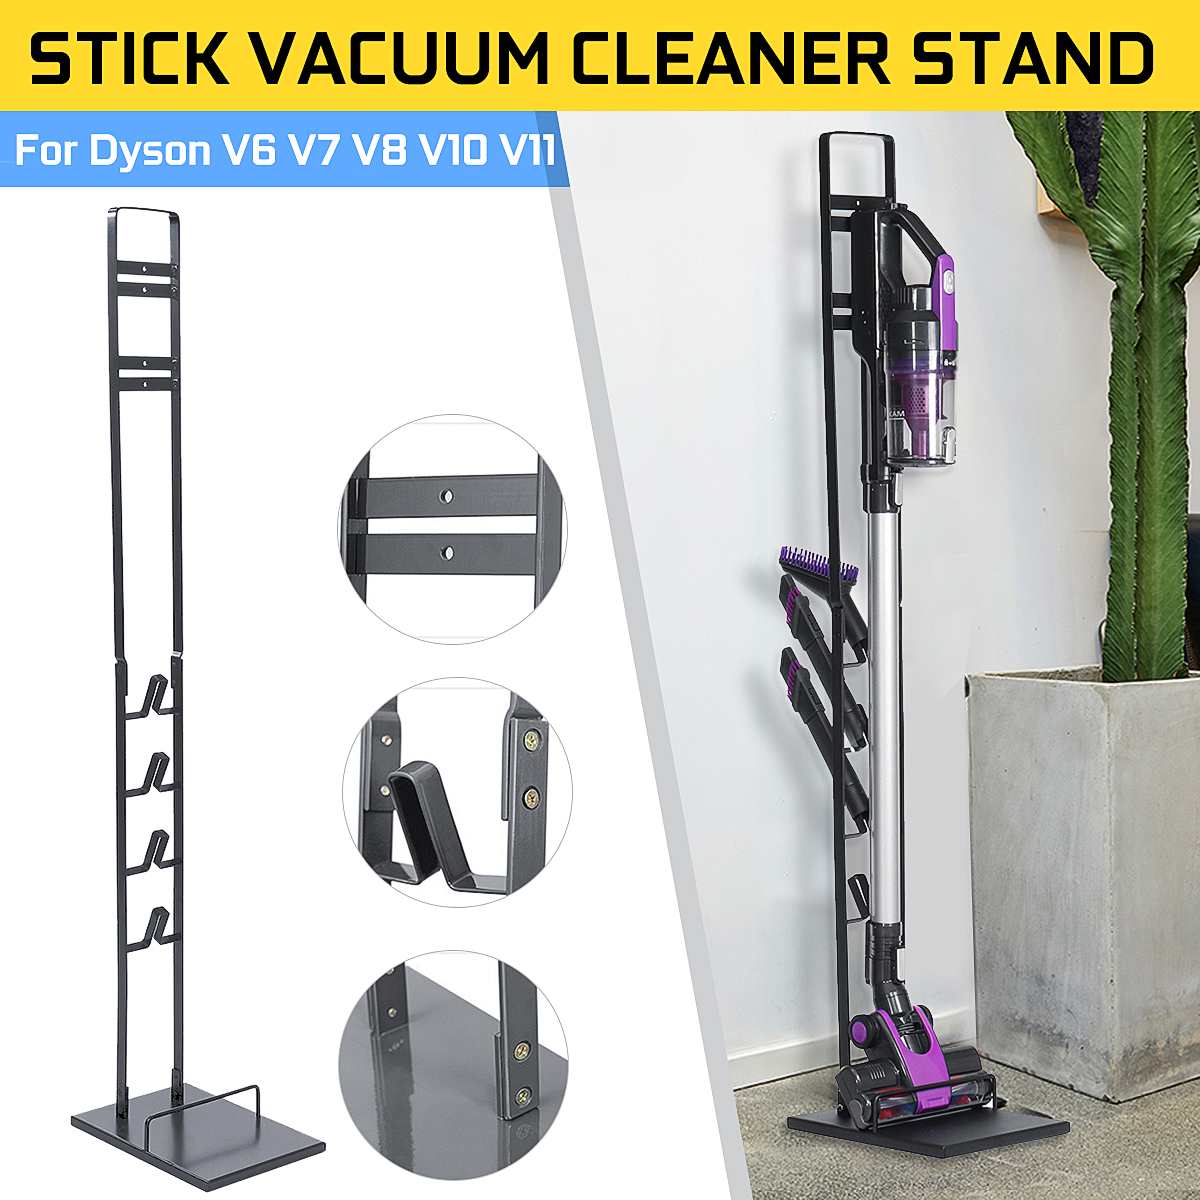 Vacuum Cleaner Freestanding Storage Holder Rack Stand Bracket Home Organizer For Dyson V6 V7 V8 V10 Cordless Vacuum Cleaner